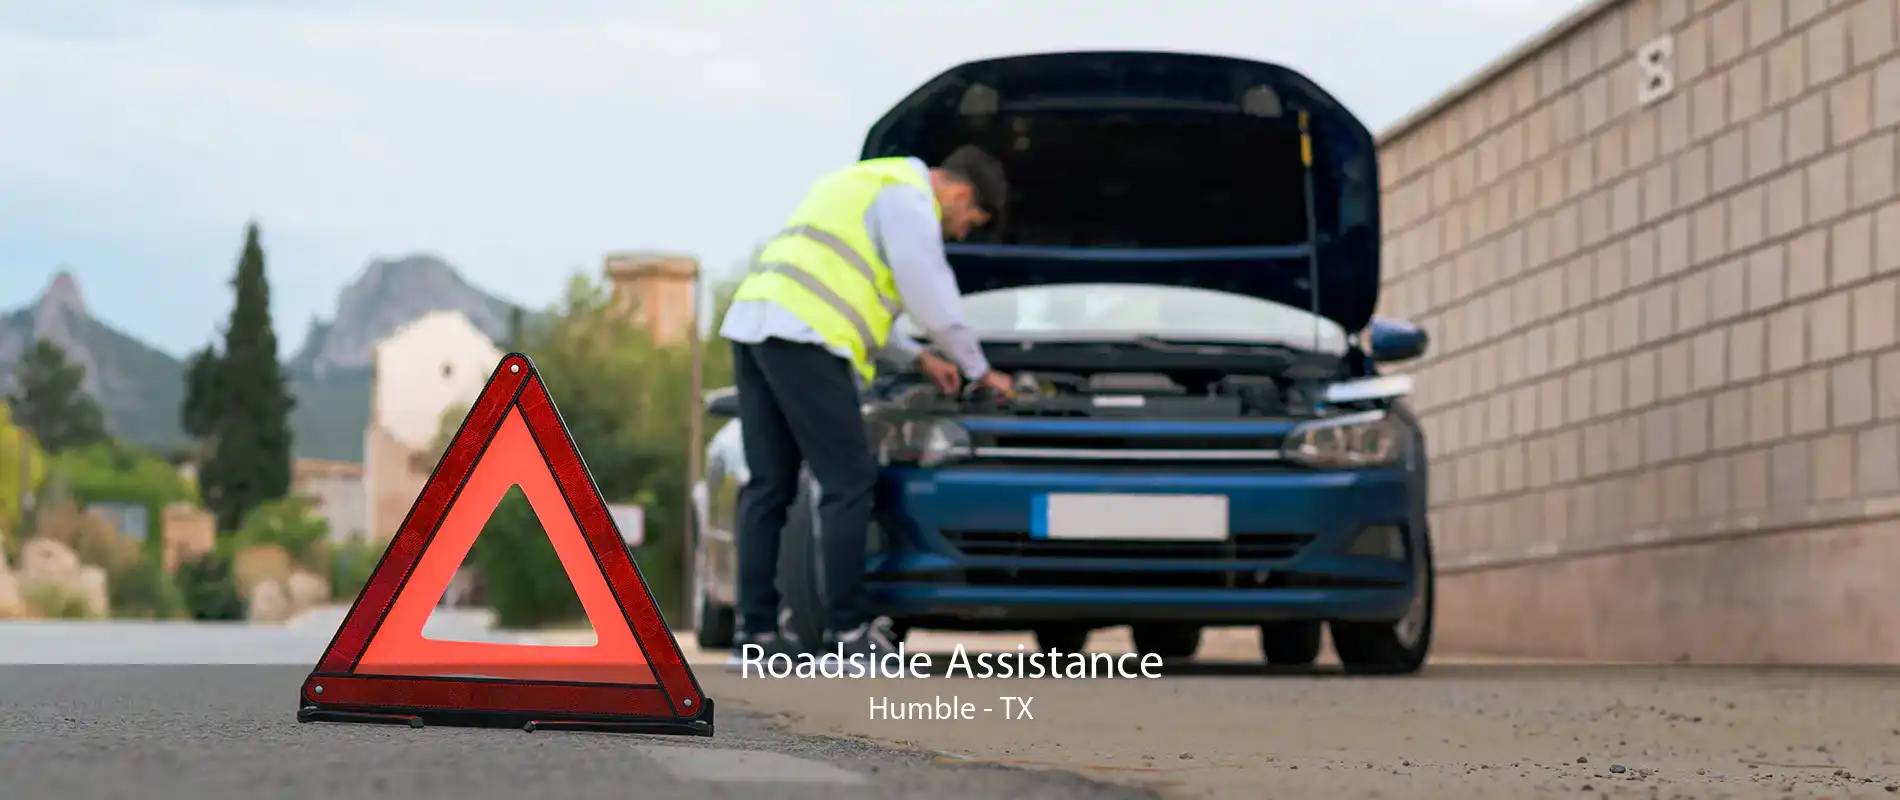 Roadside Assistance Humble - TX